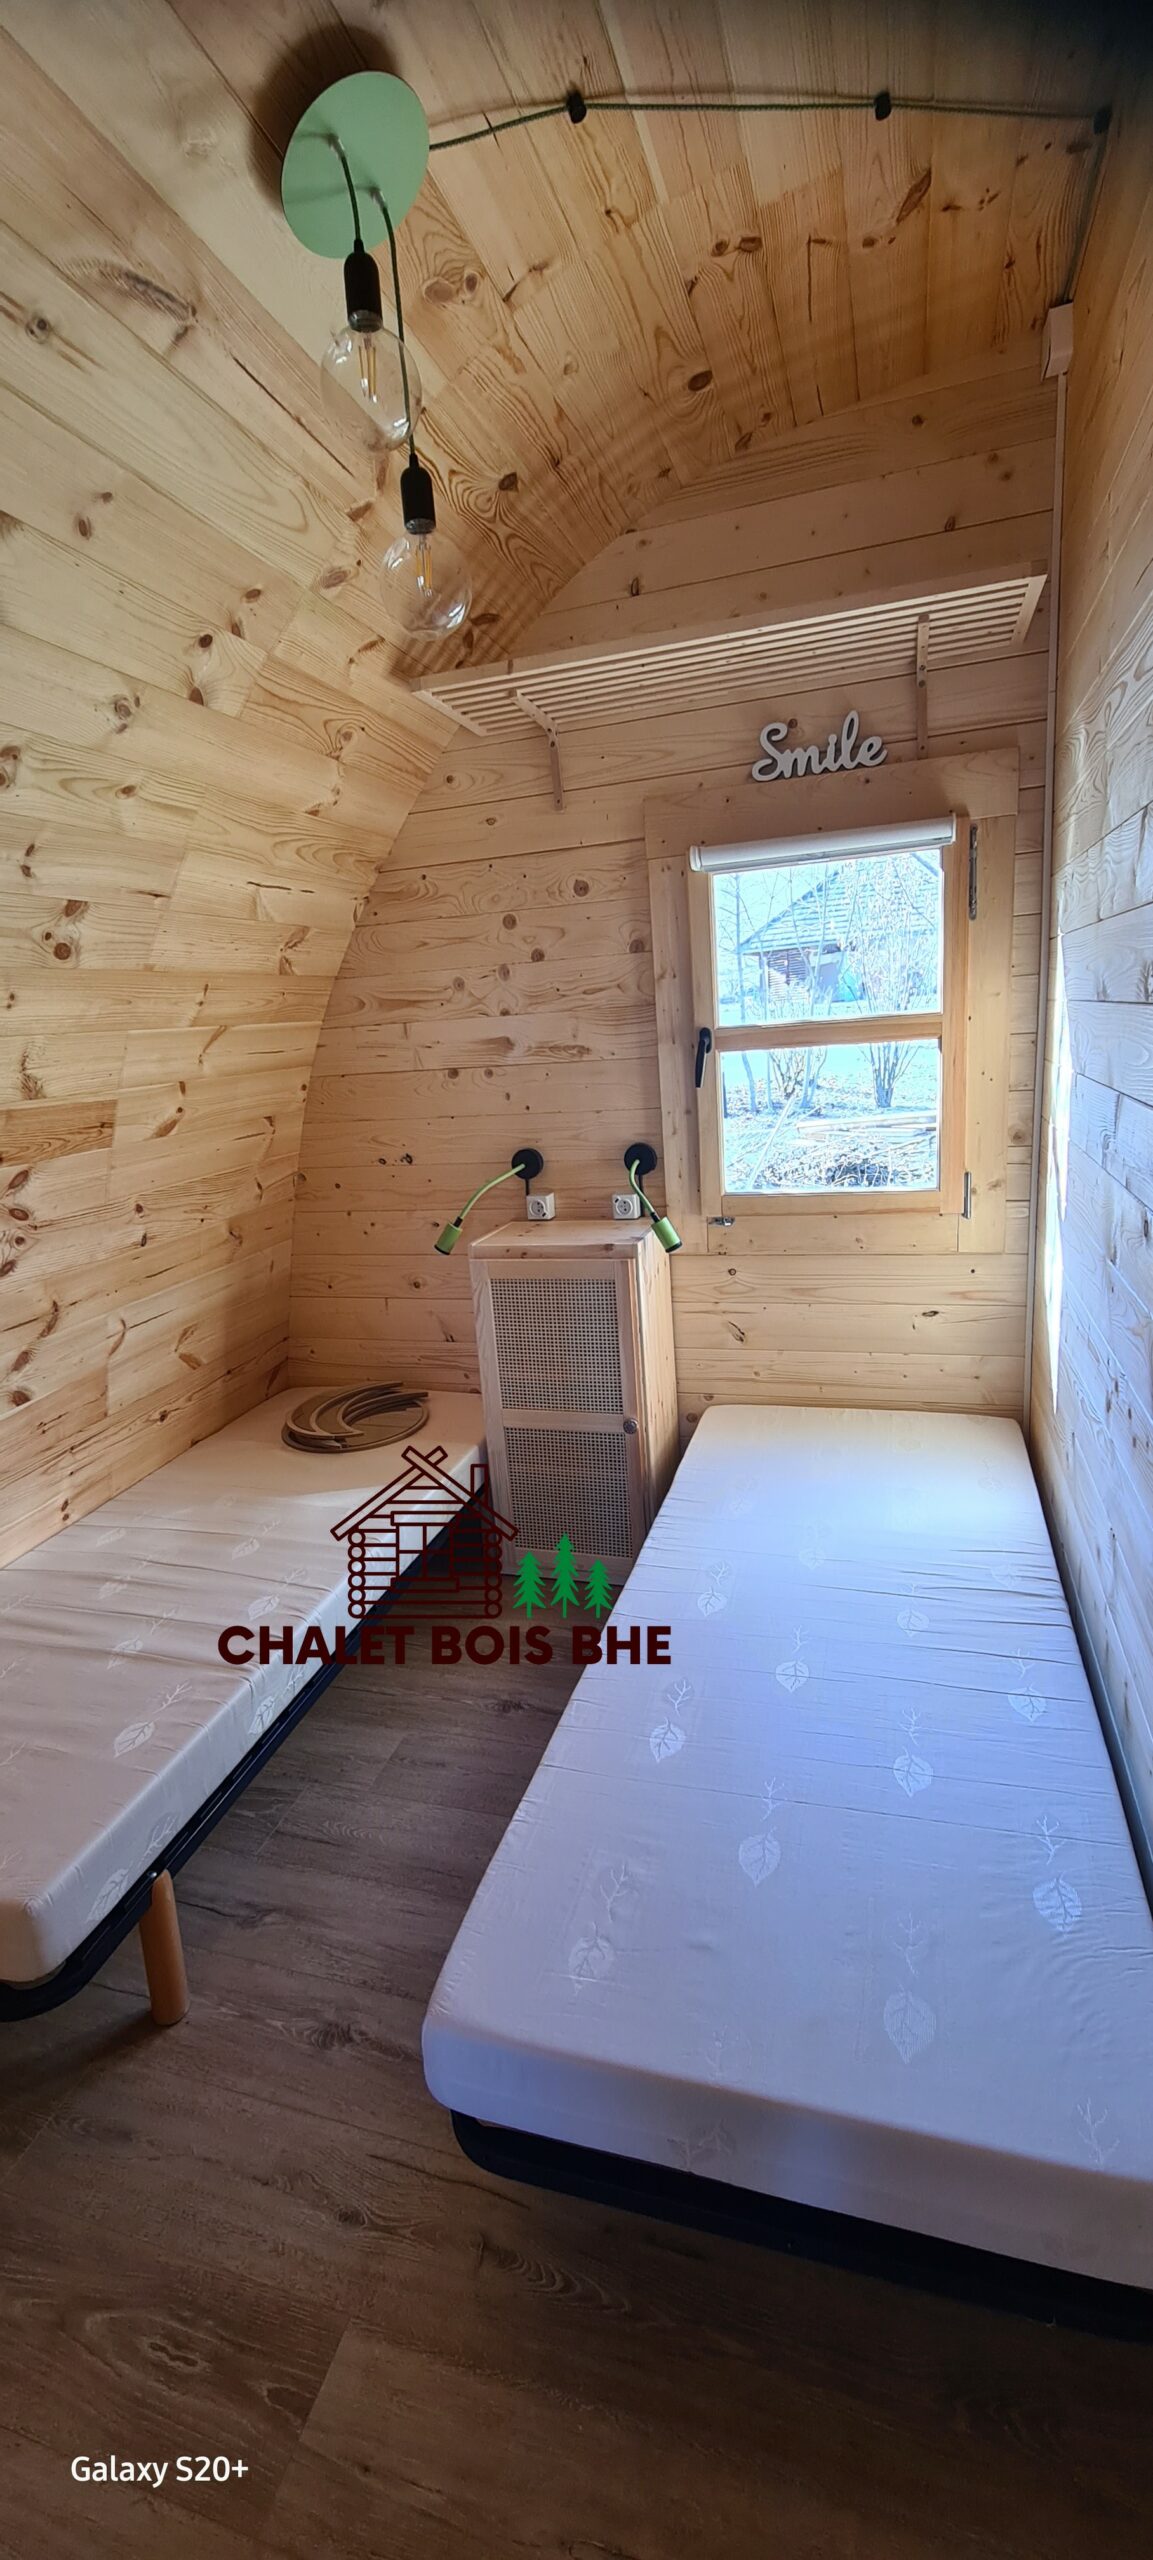 D Chalet Bois/Pod de 18m² (3X6m) fabriqué en épicéa de 44mm - Chalet Bois  BHE Abri de jardin /Pod de 18 m2 fabriqué en épicéa massif de 44 mm